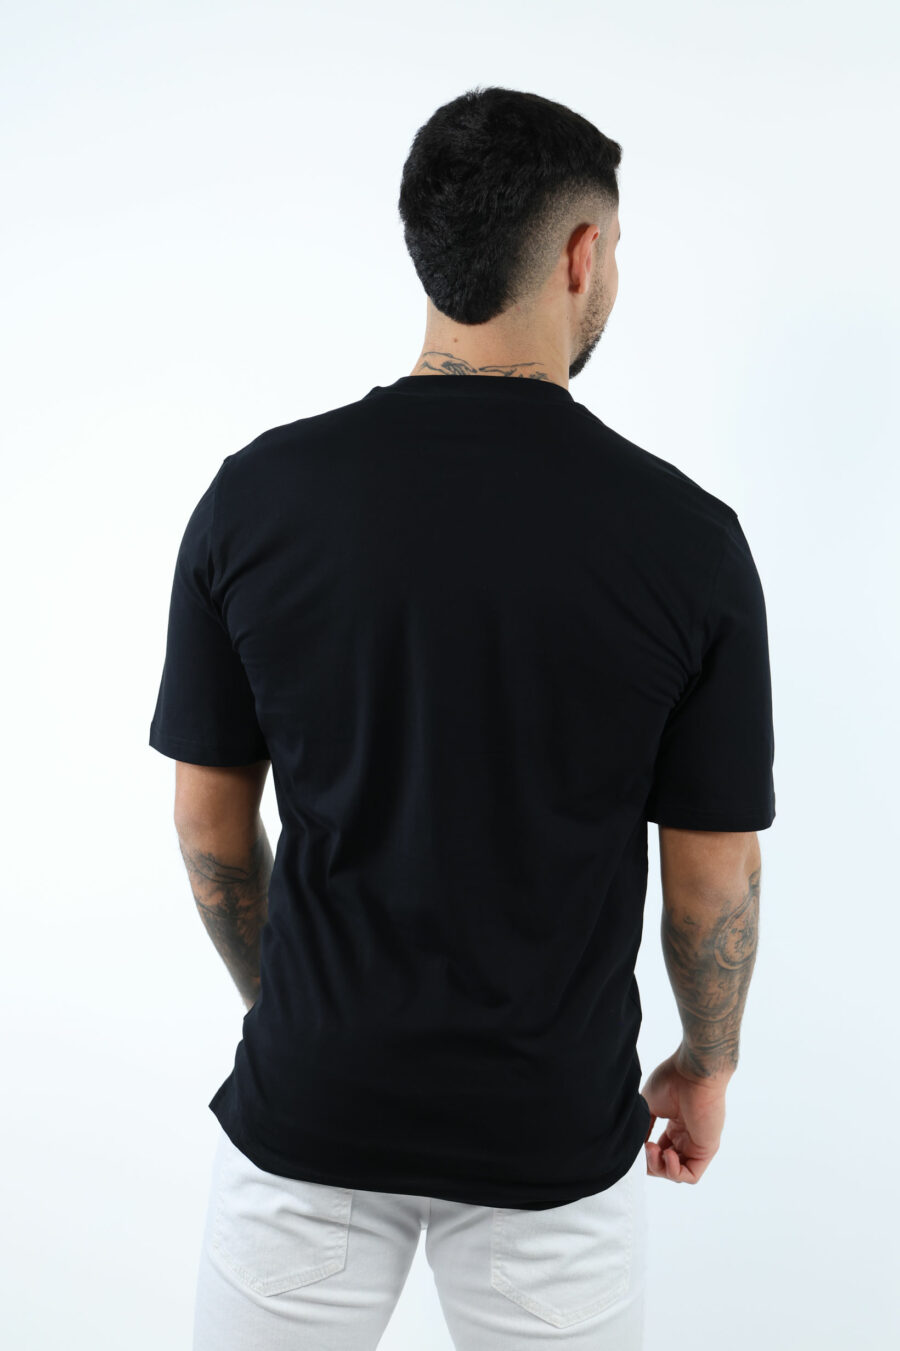 Camiseta negra con maxilogo oso en puntos monocromático - 107206